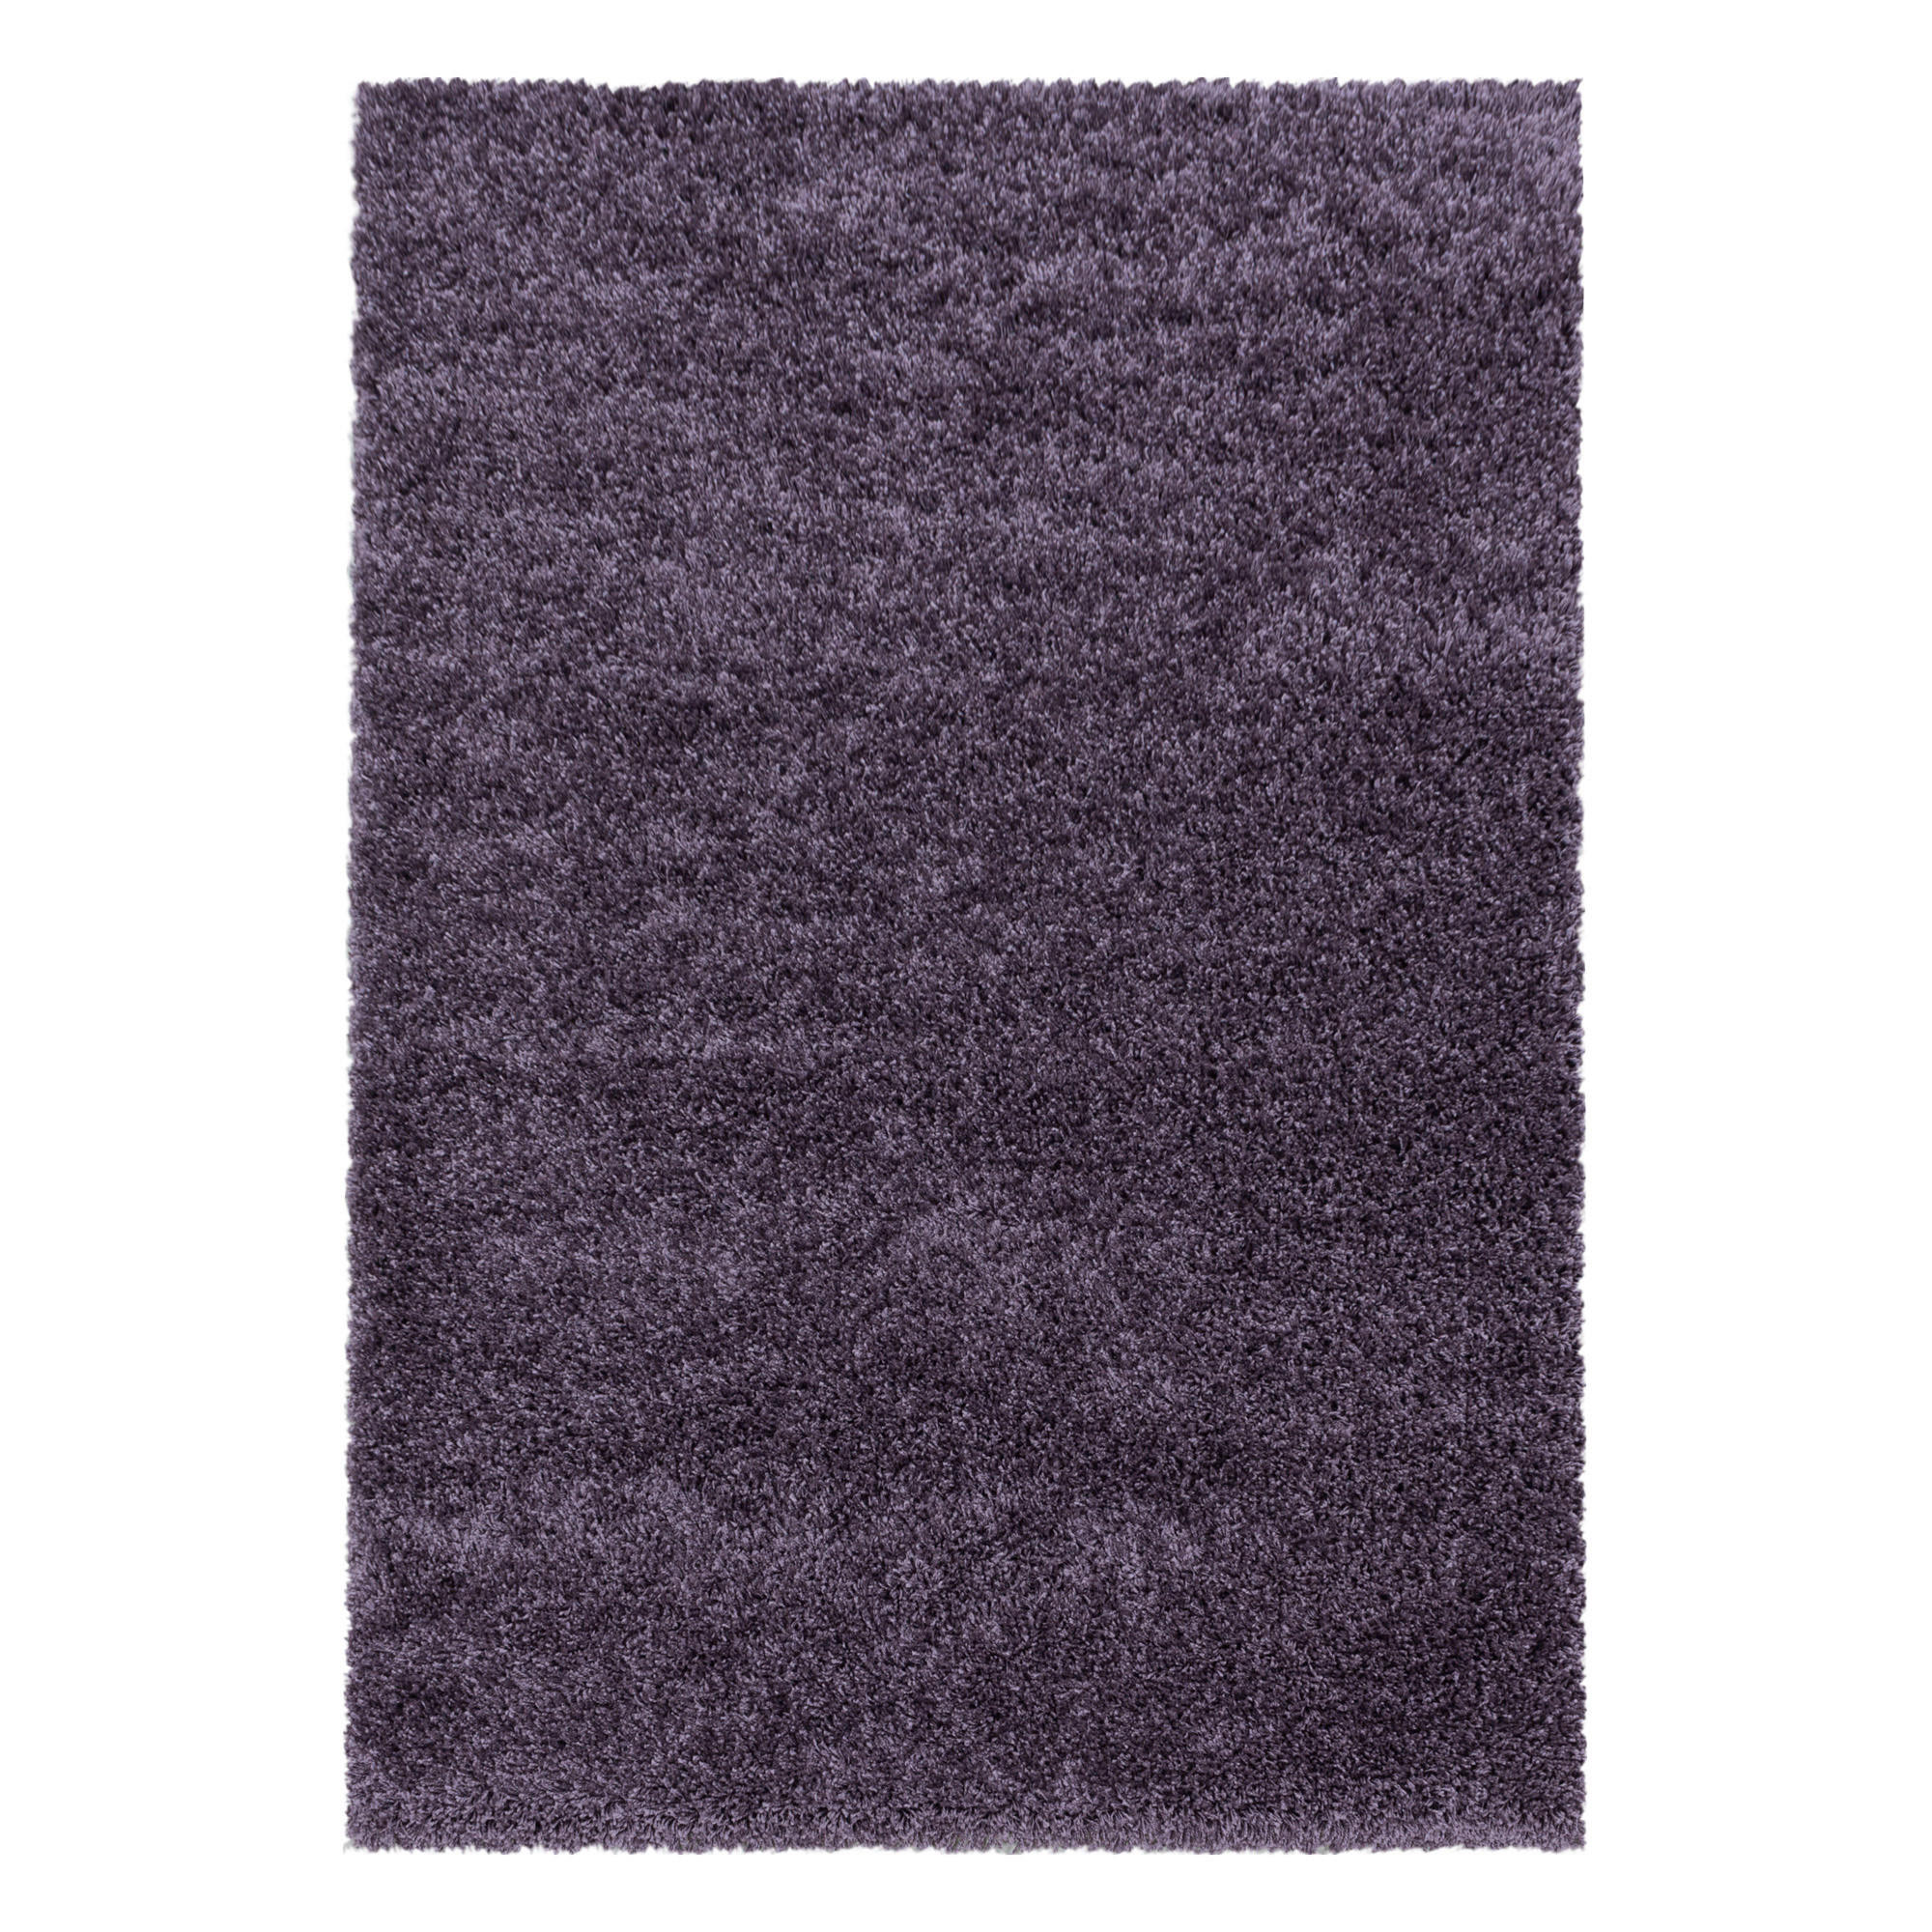 HOCHFLORTEPPICH 60/110 cm Sydney 3000 violett  - Violett, Basics, Textil (60/110cm) - Novel